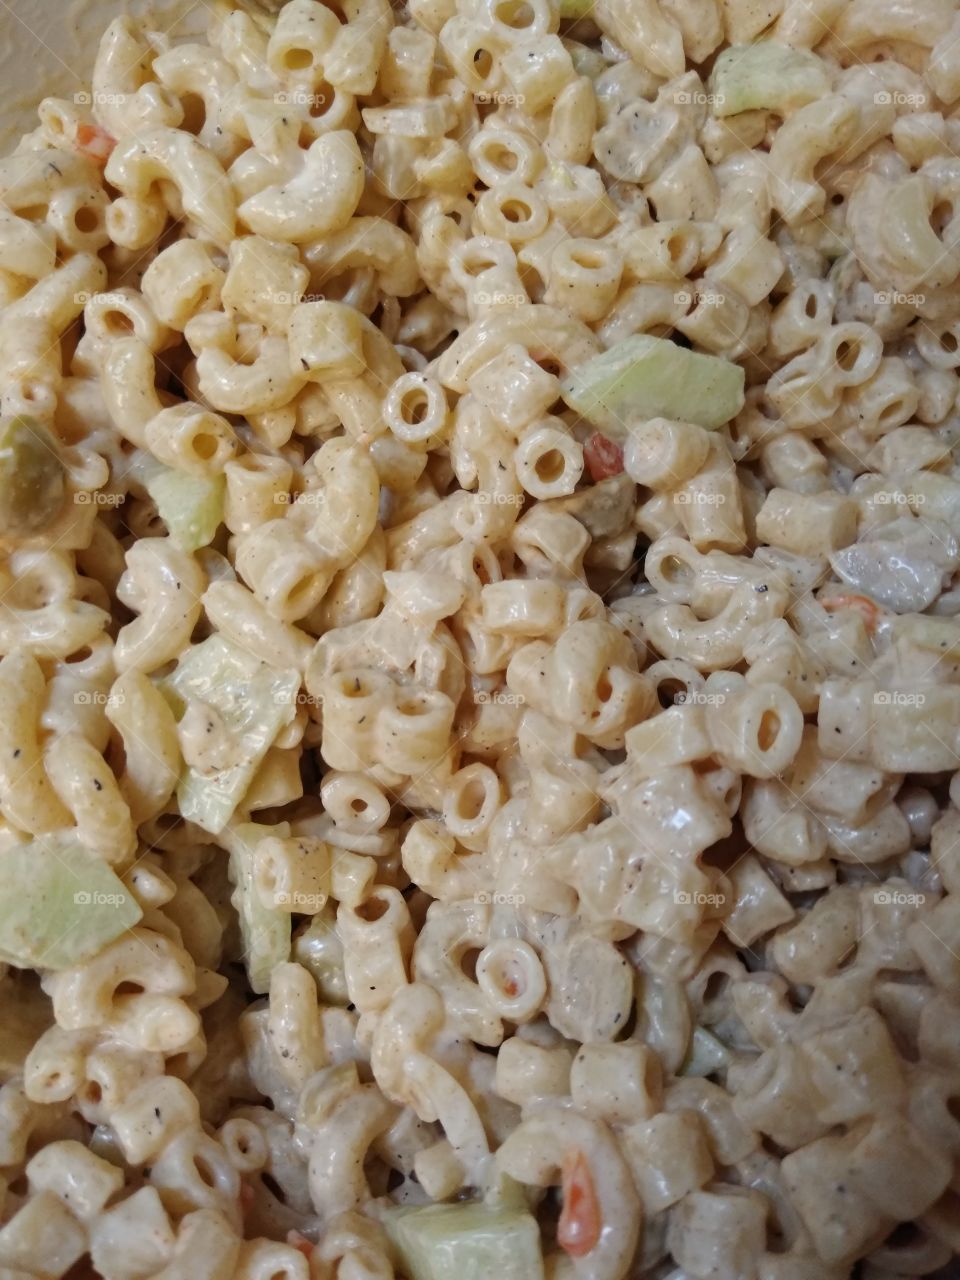 Vegan macaroni salad using vegan mayo